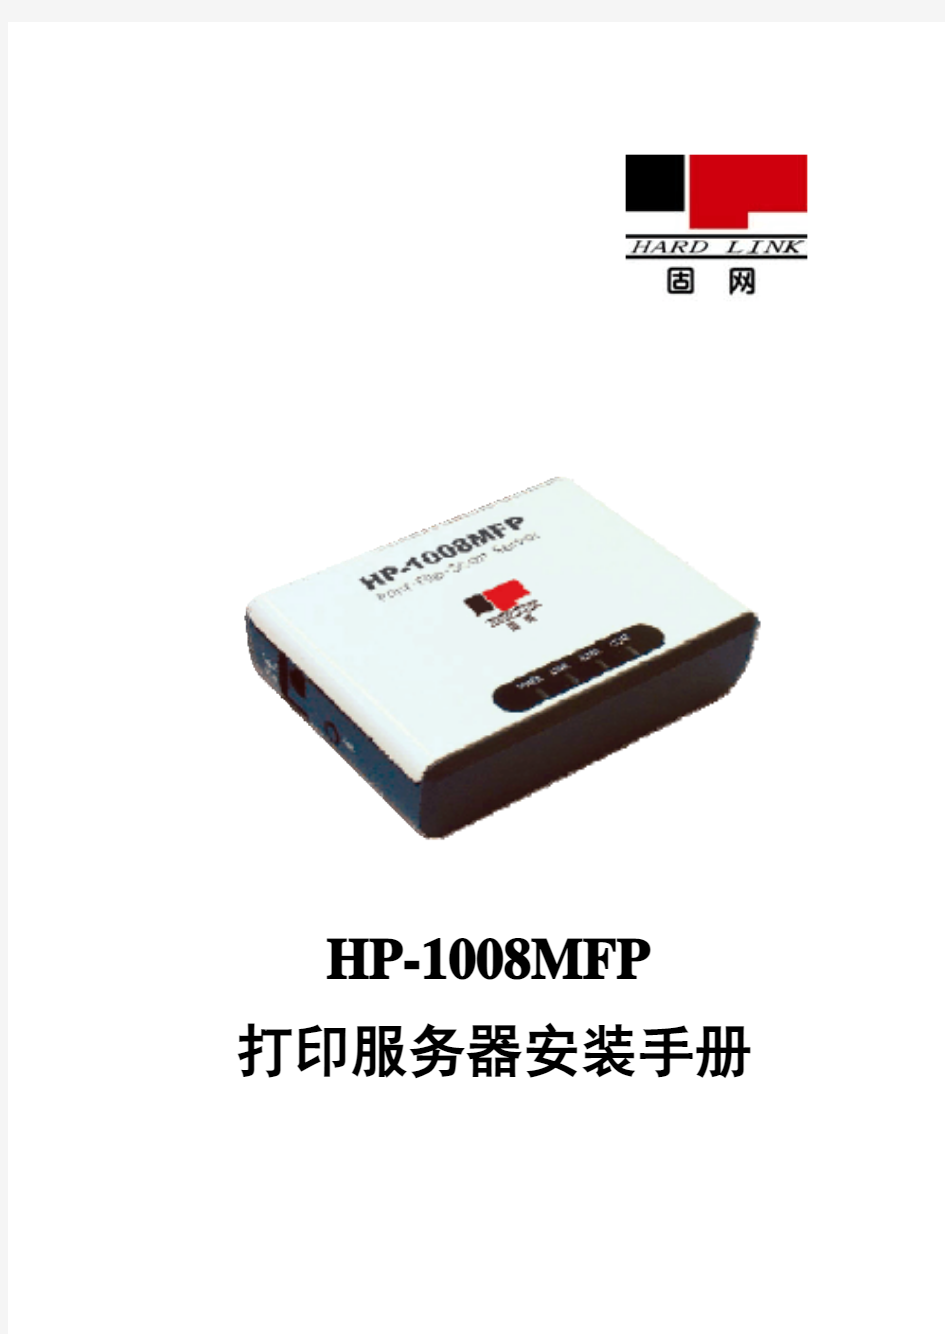 固网打印服务器HP-1008MFP说明书